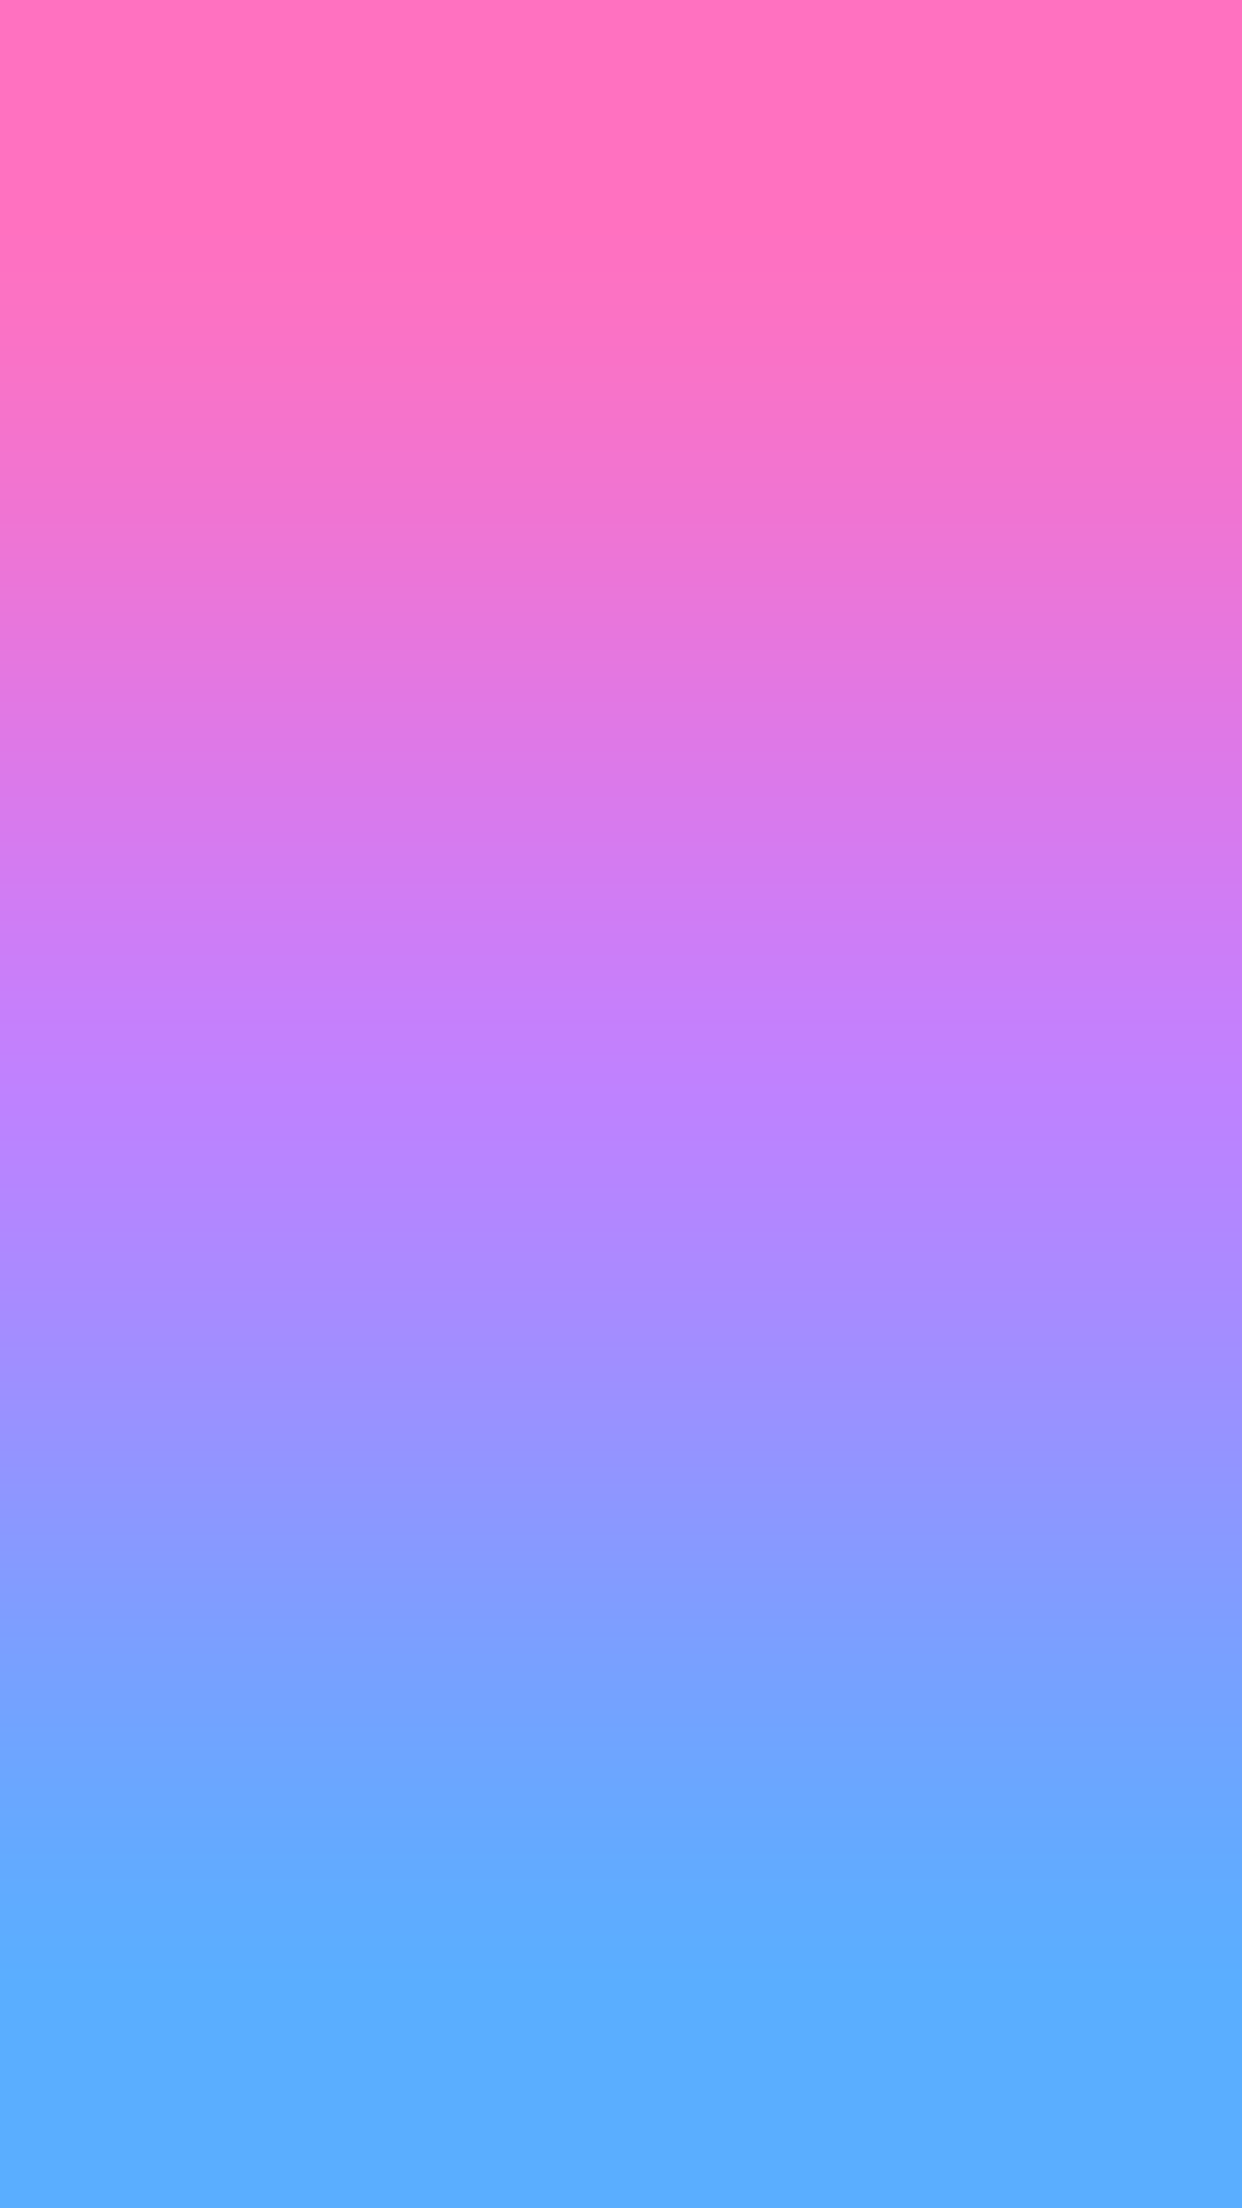 1242x2208 hồng, tím, xanh, tím, gradient, ombre, hình nền, nền, HD, iPhone.  Hình nền ombre tím, Hình nền ombre hồng, Hình nền ombre